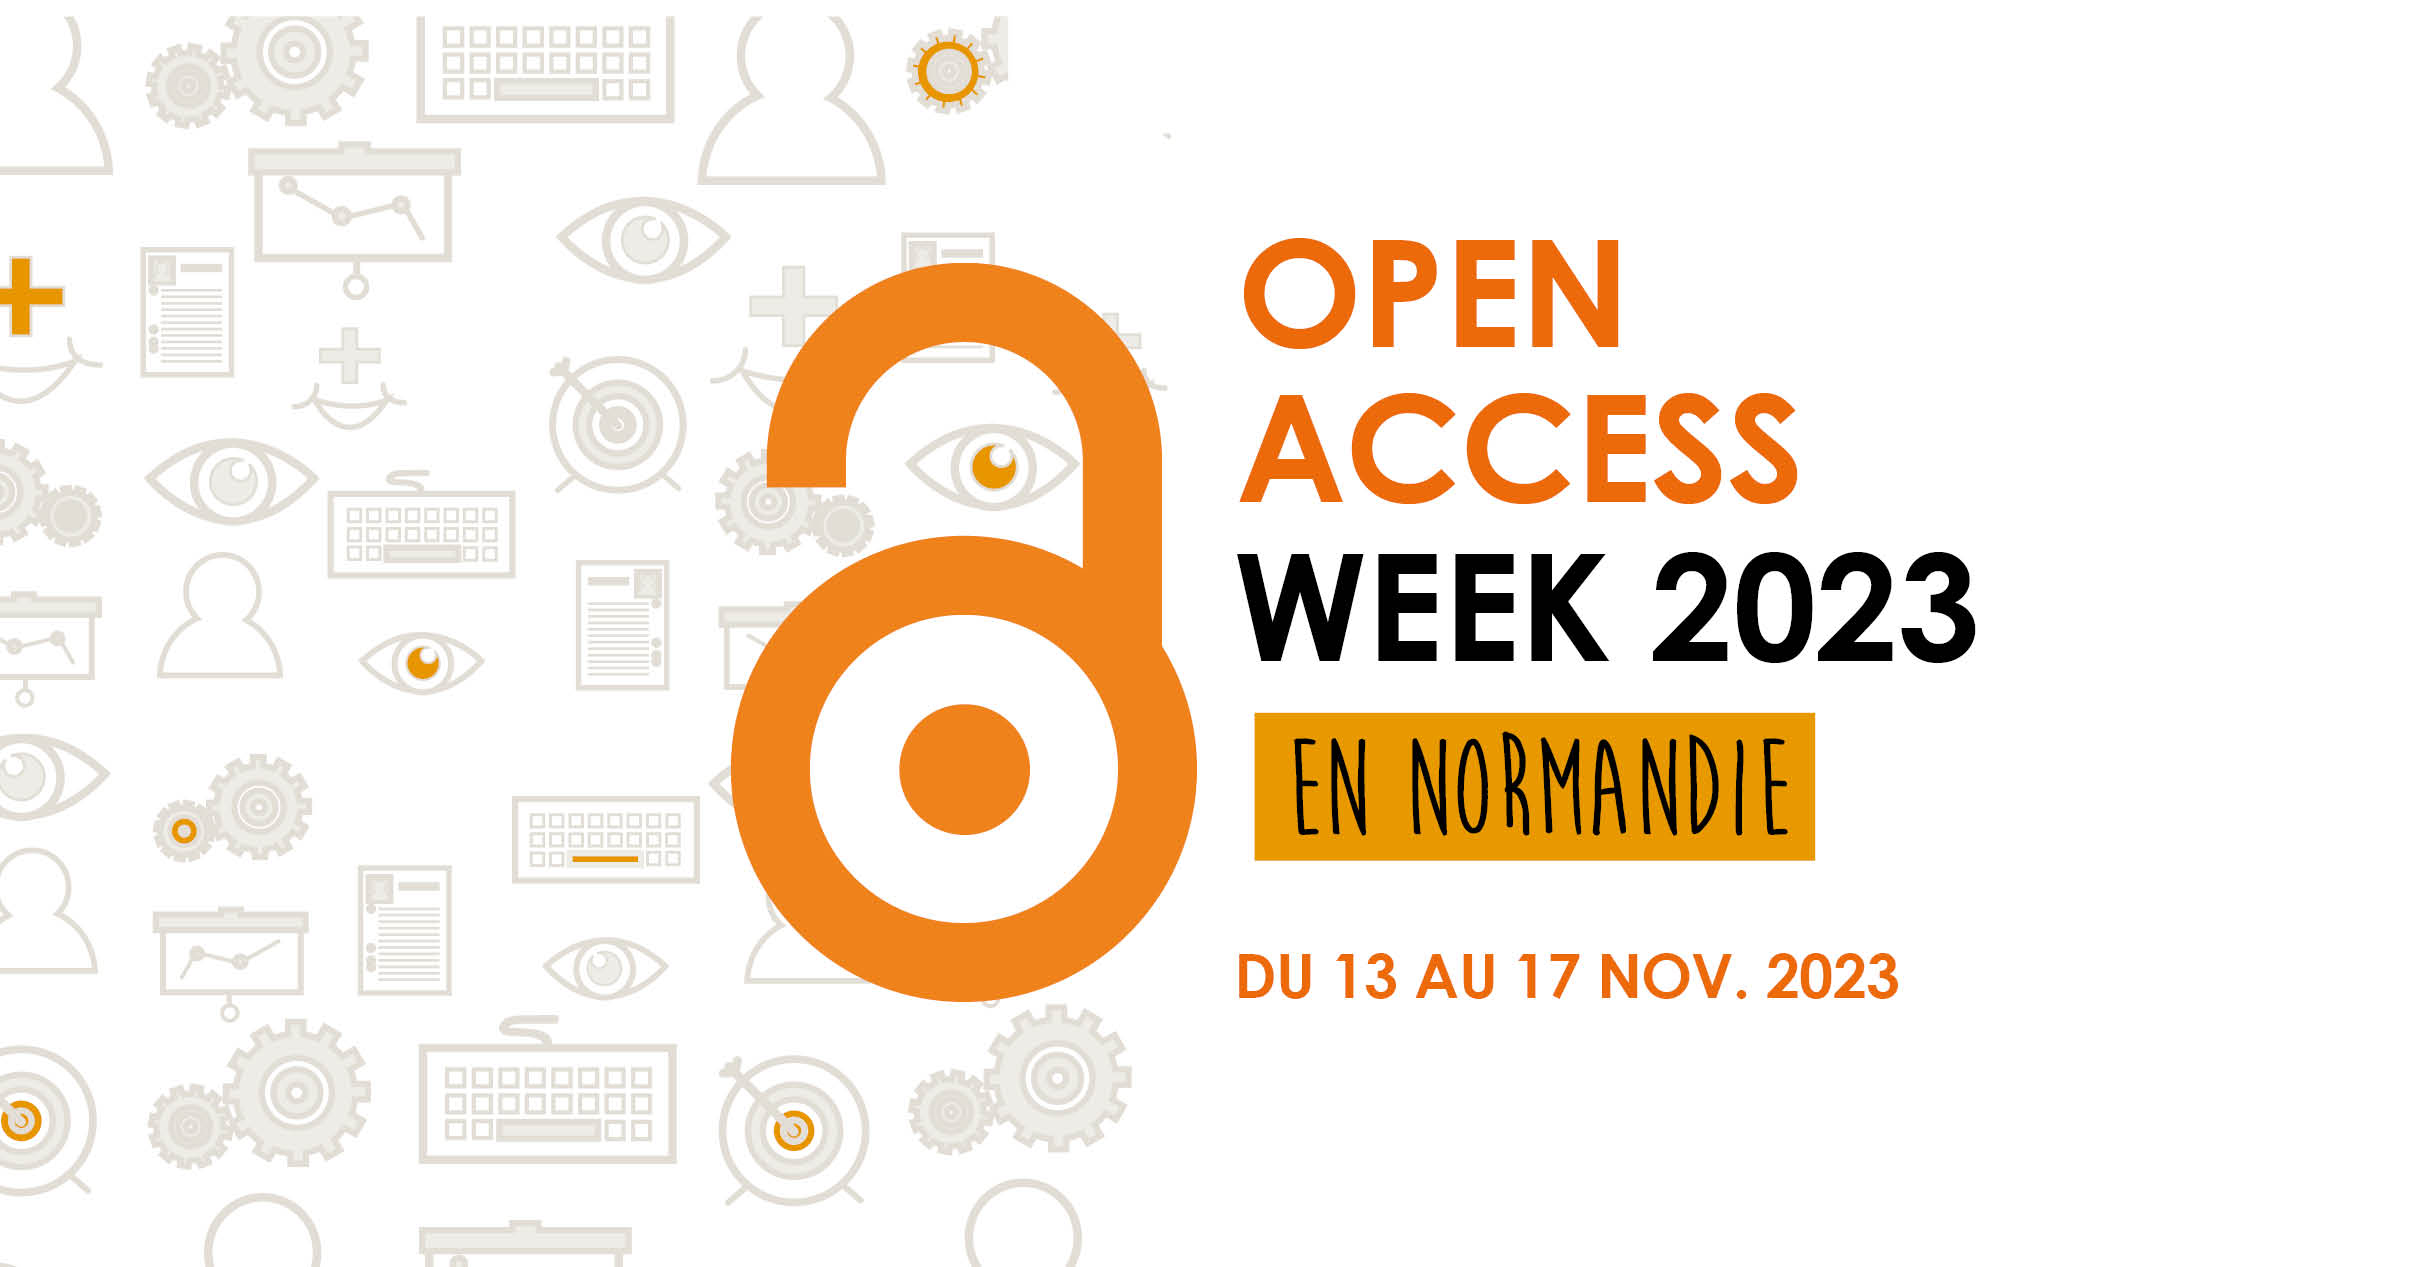 Open Access Week 2023 en Normandie